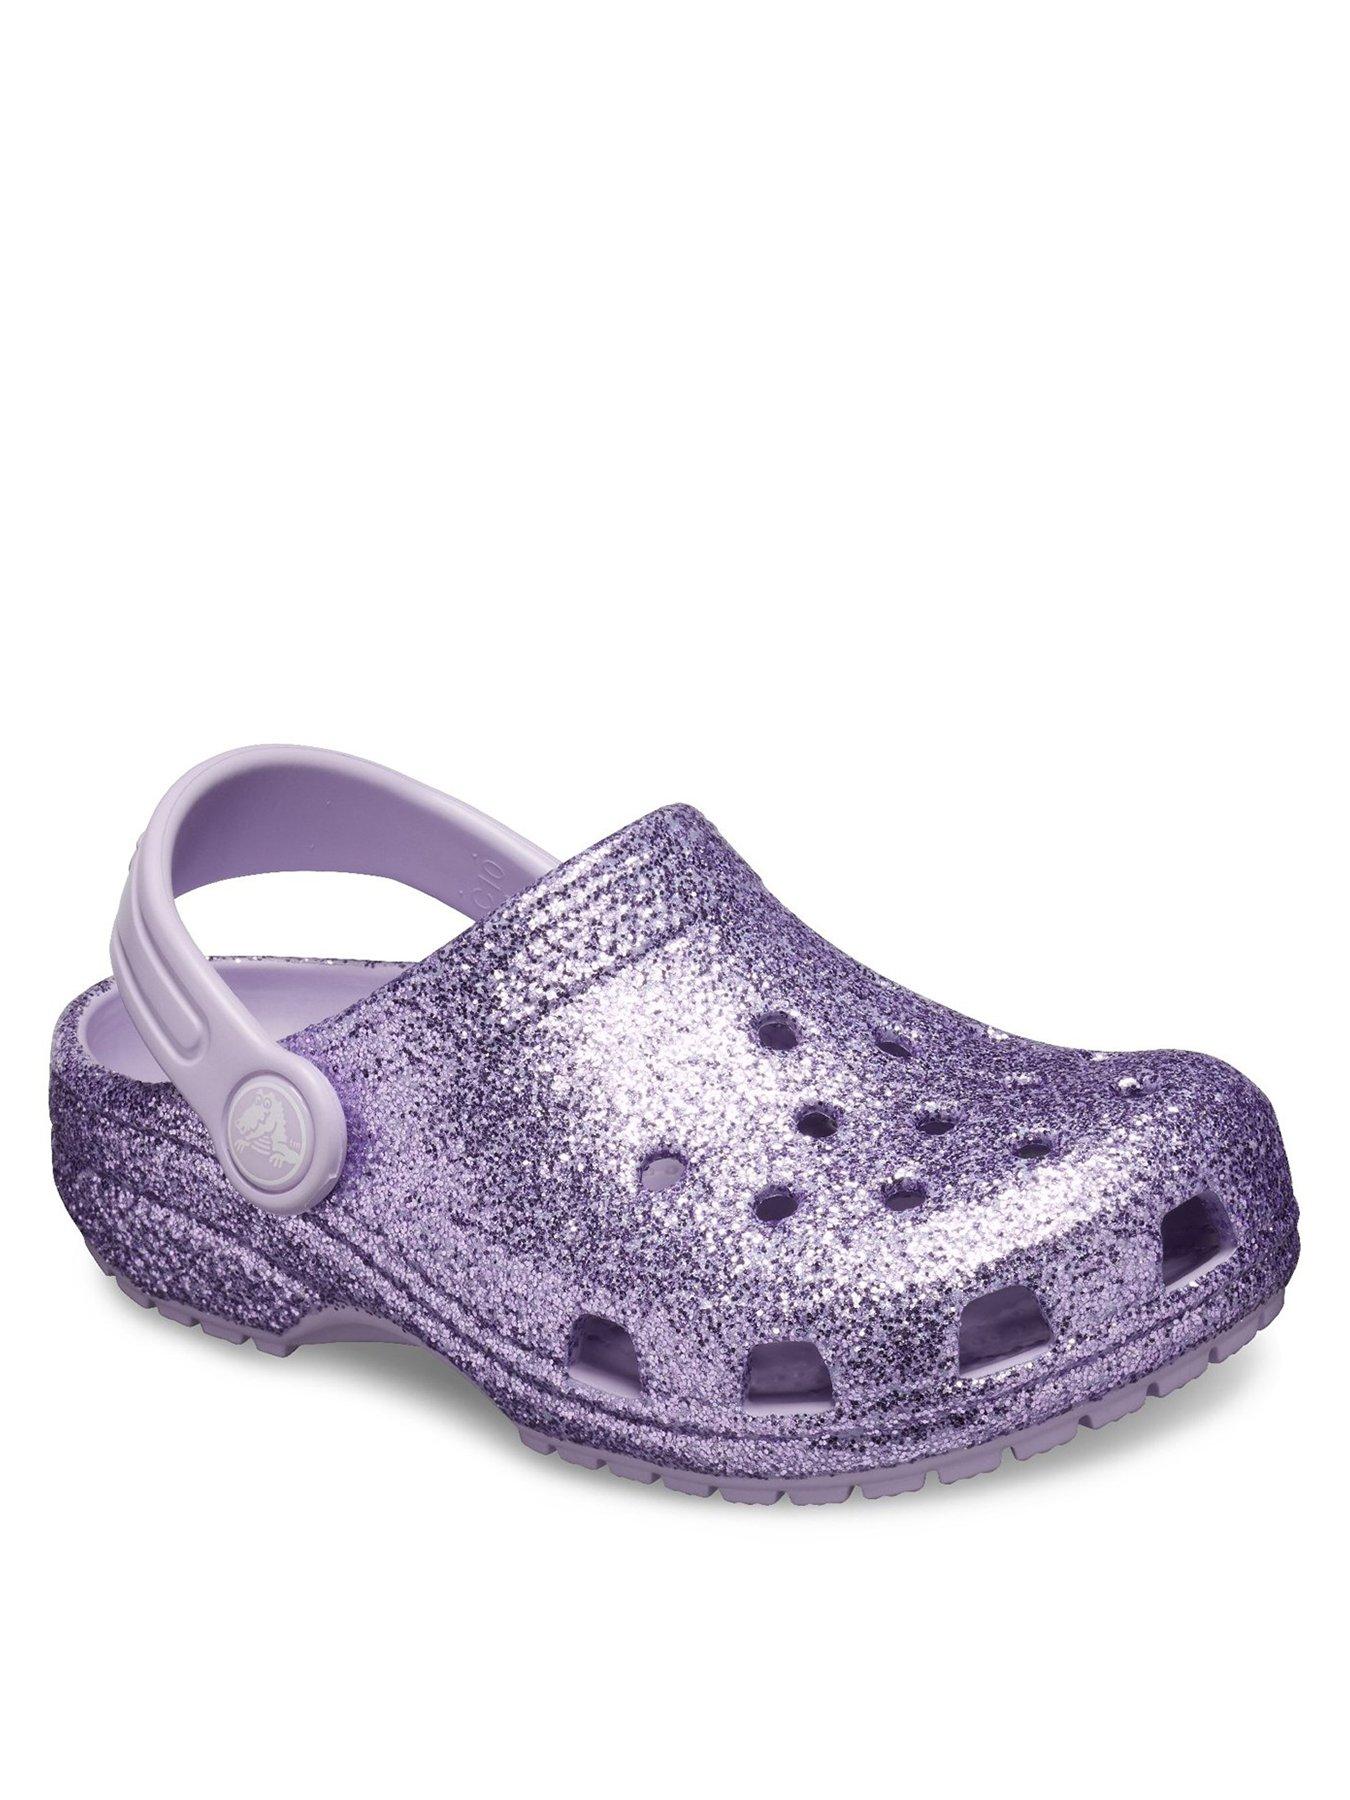 Crocs Girls Classic Glitter Clog Slip 